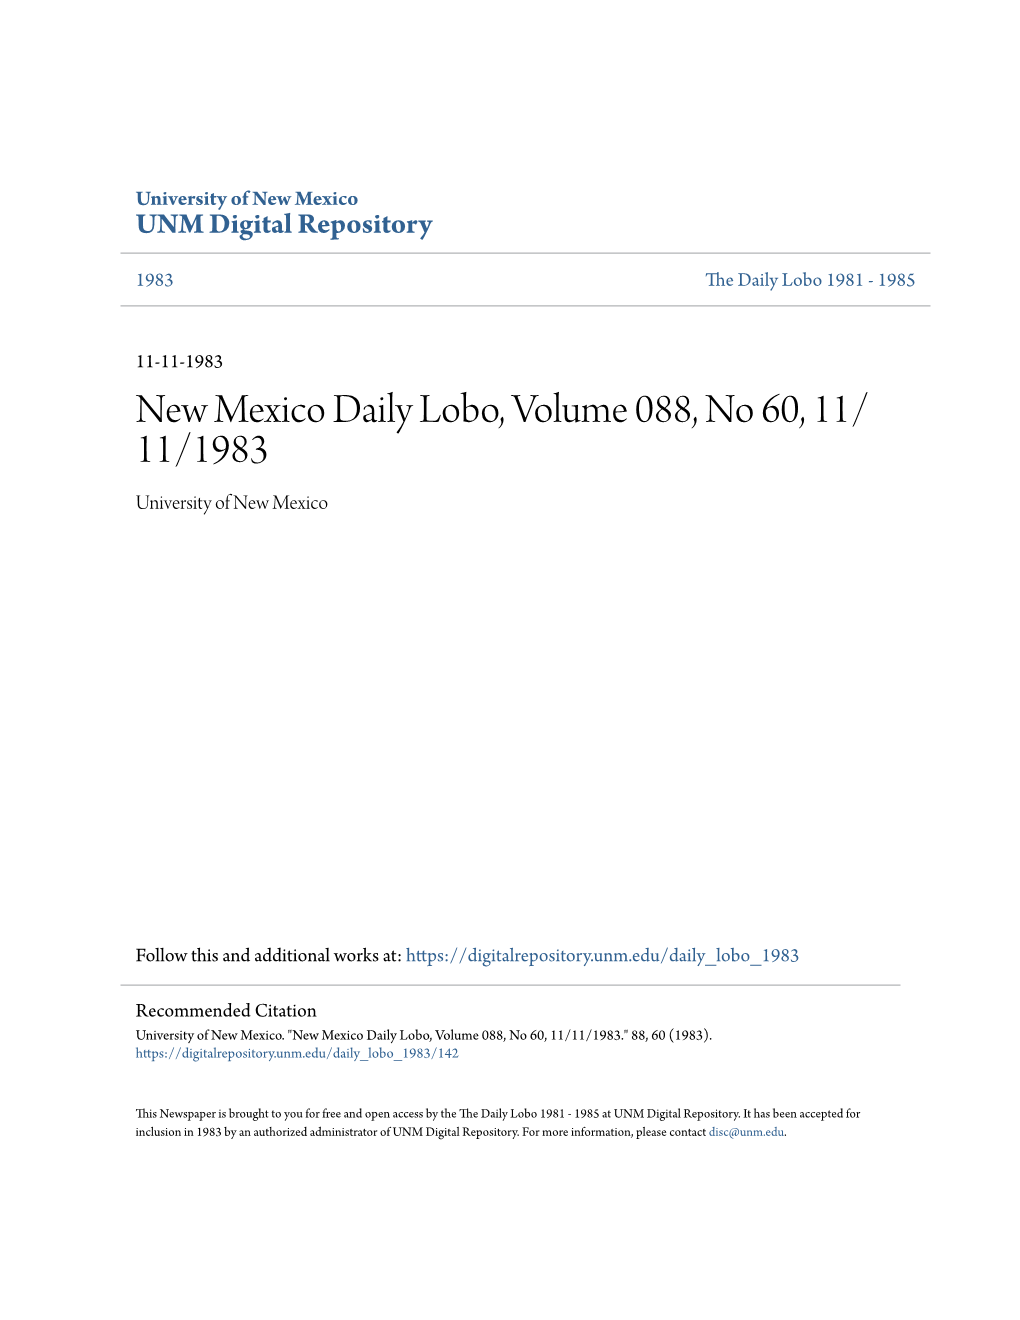 Daily Lobo, Volume 088, No 60, 11/ 11/1983 University of New Mexico